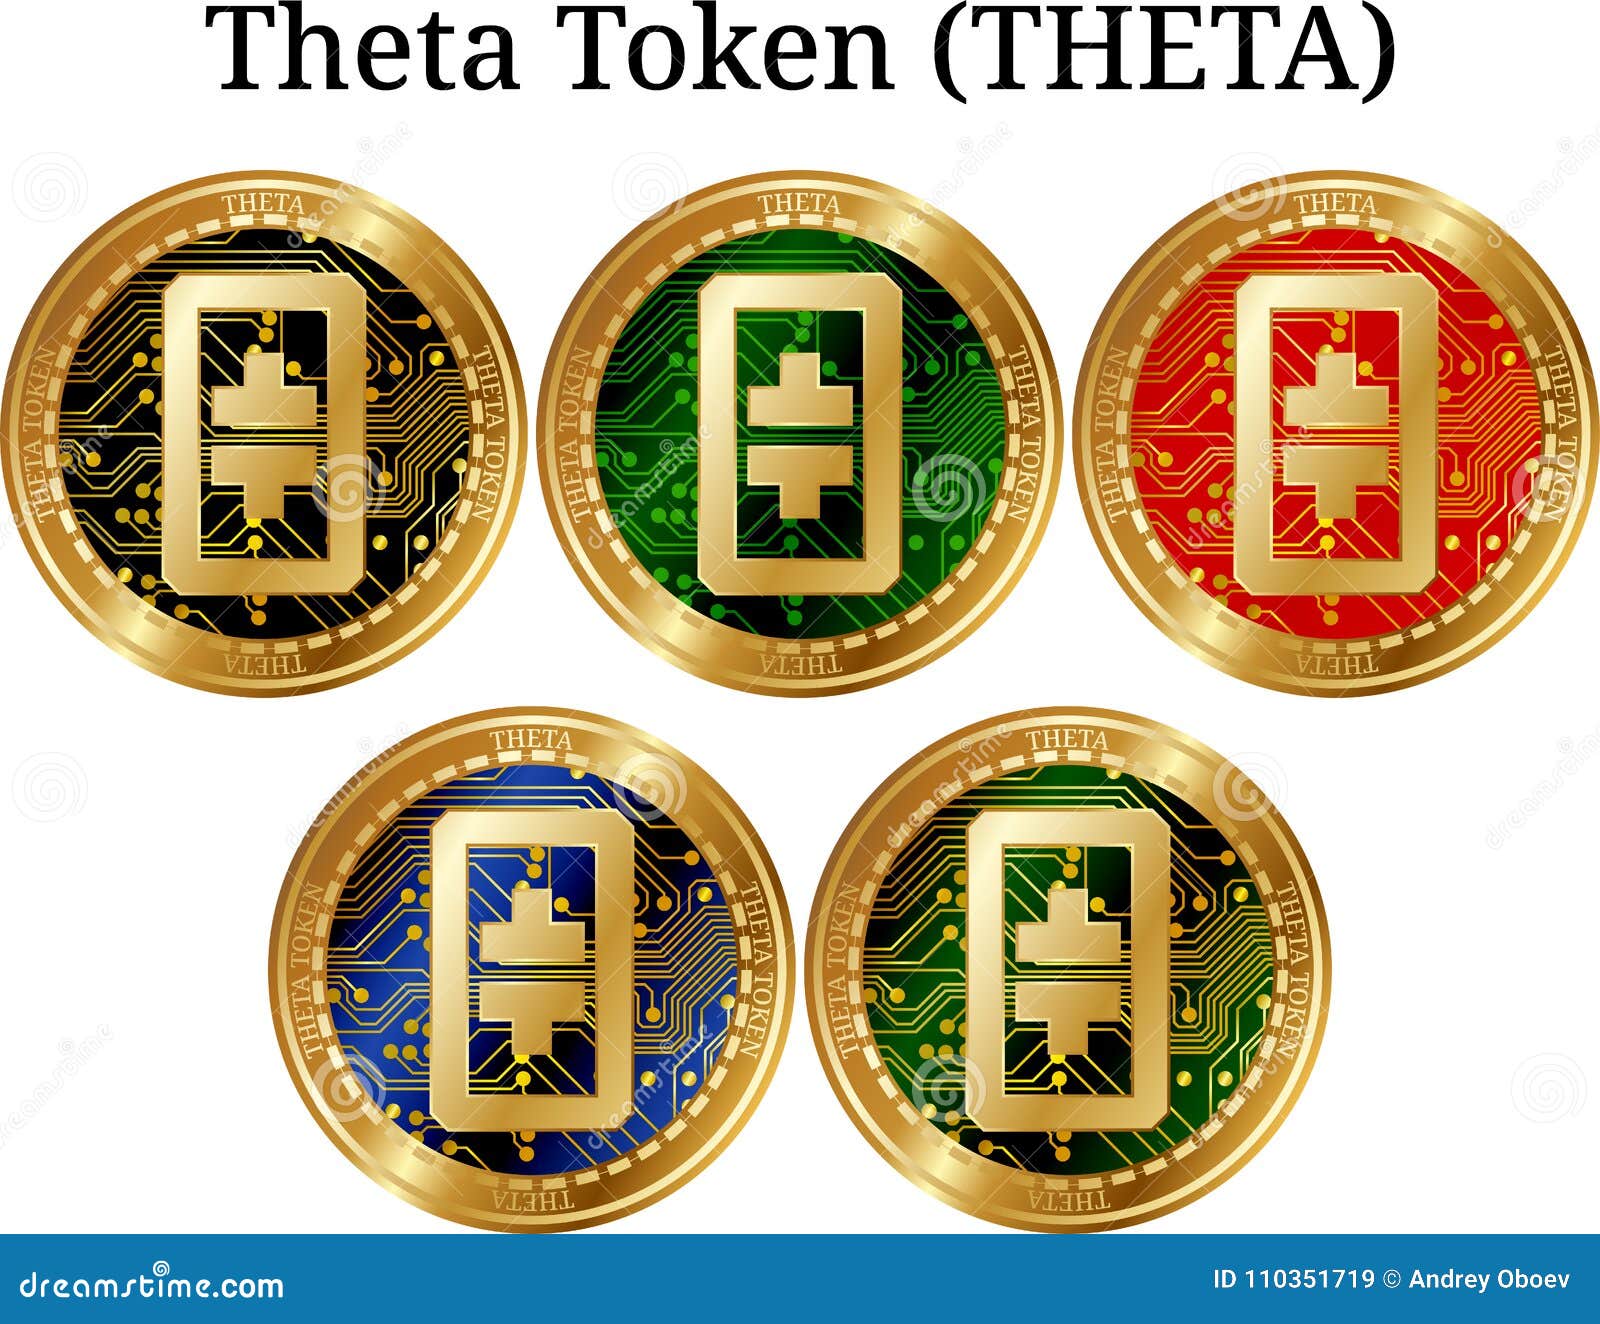 Theta coin